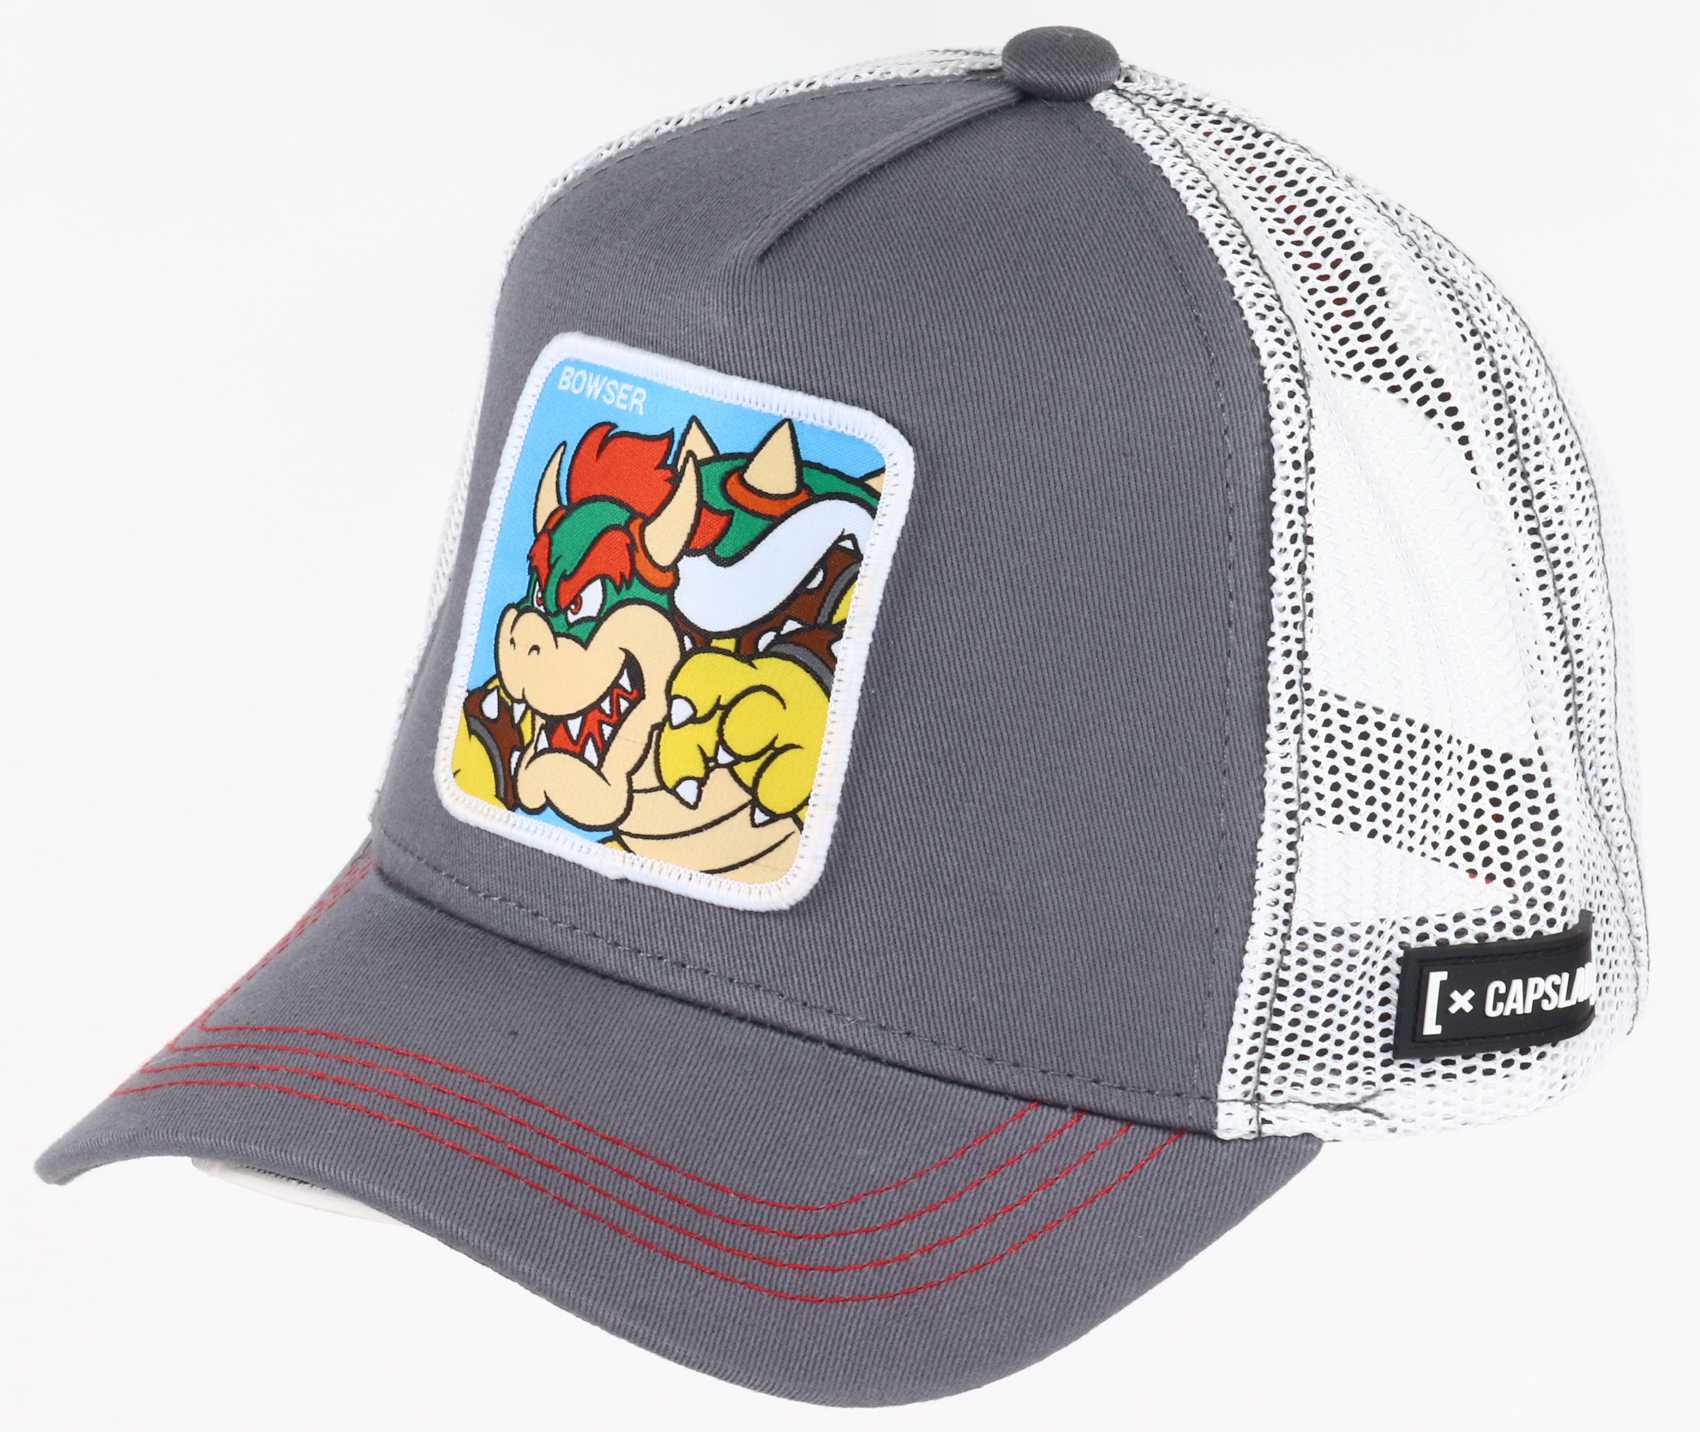 Bowser Super Mario Trucker Cap Capslab